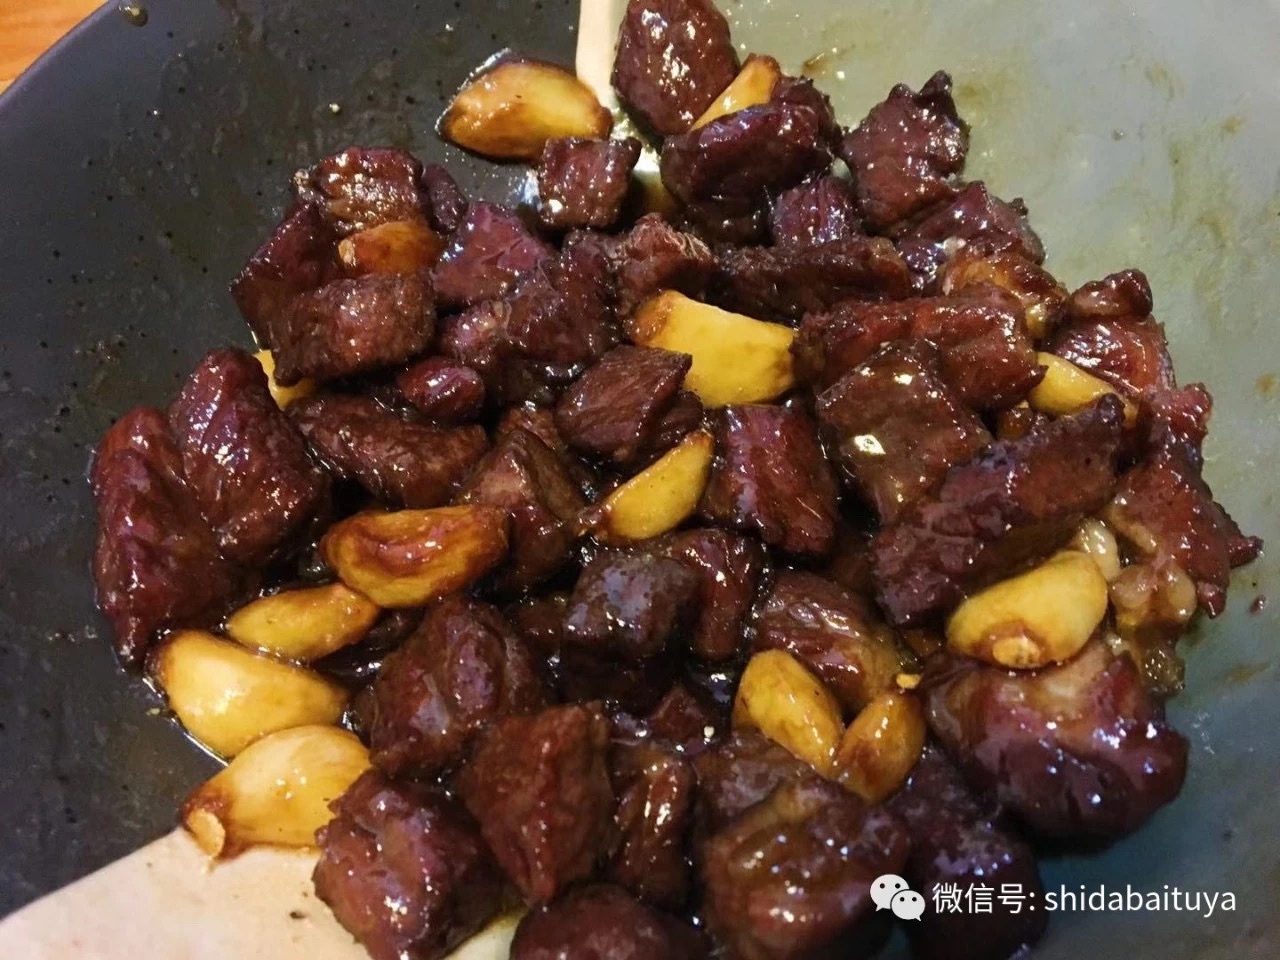 复刻天津桂园餐厅的黑蒜子牛肉粒